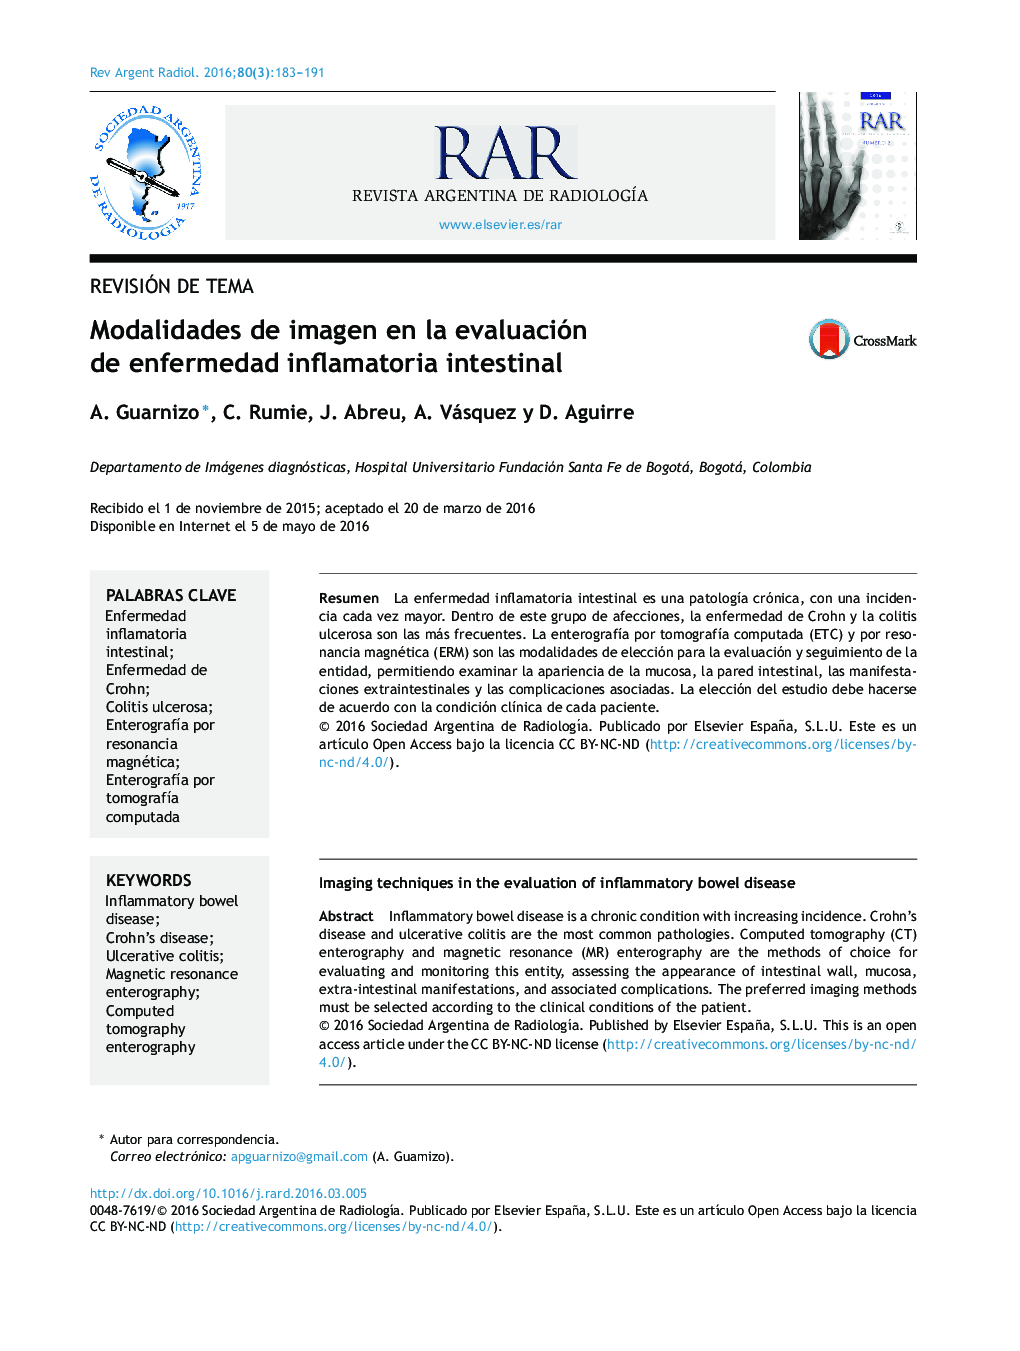 Modalidades de imagen en la evaluación de enfermedad inflamatoria intestinal